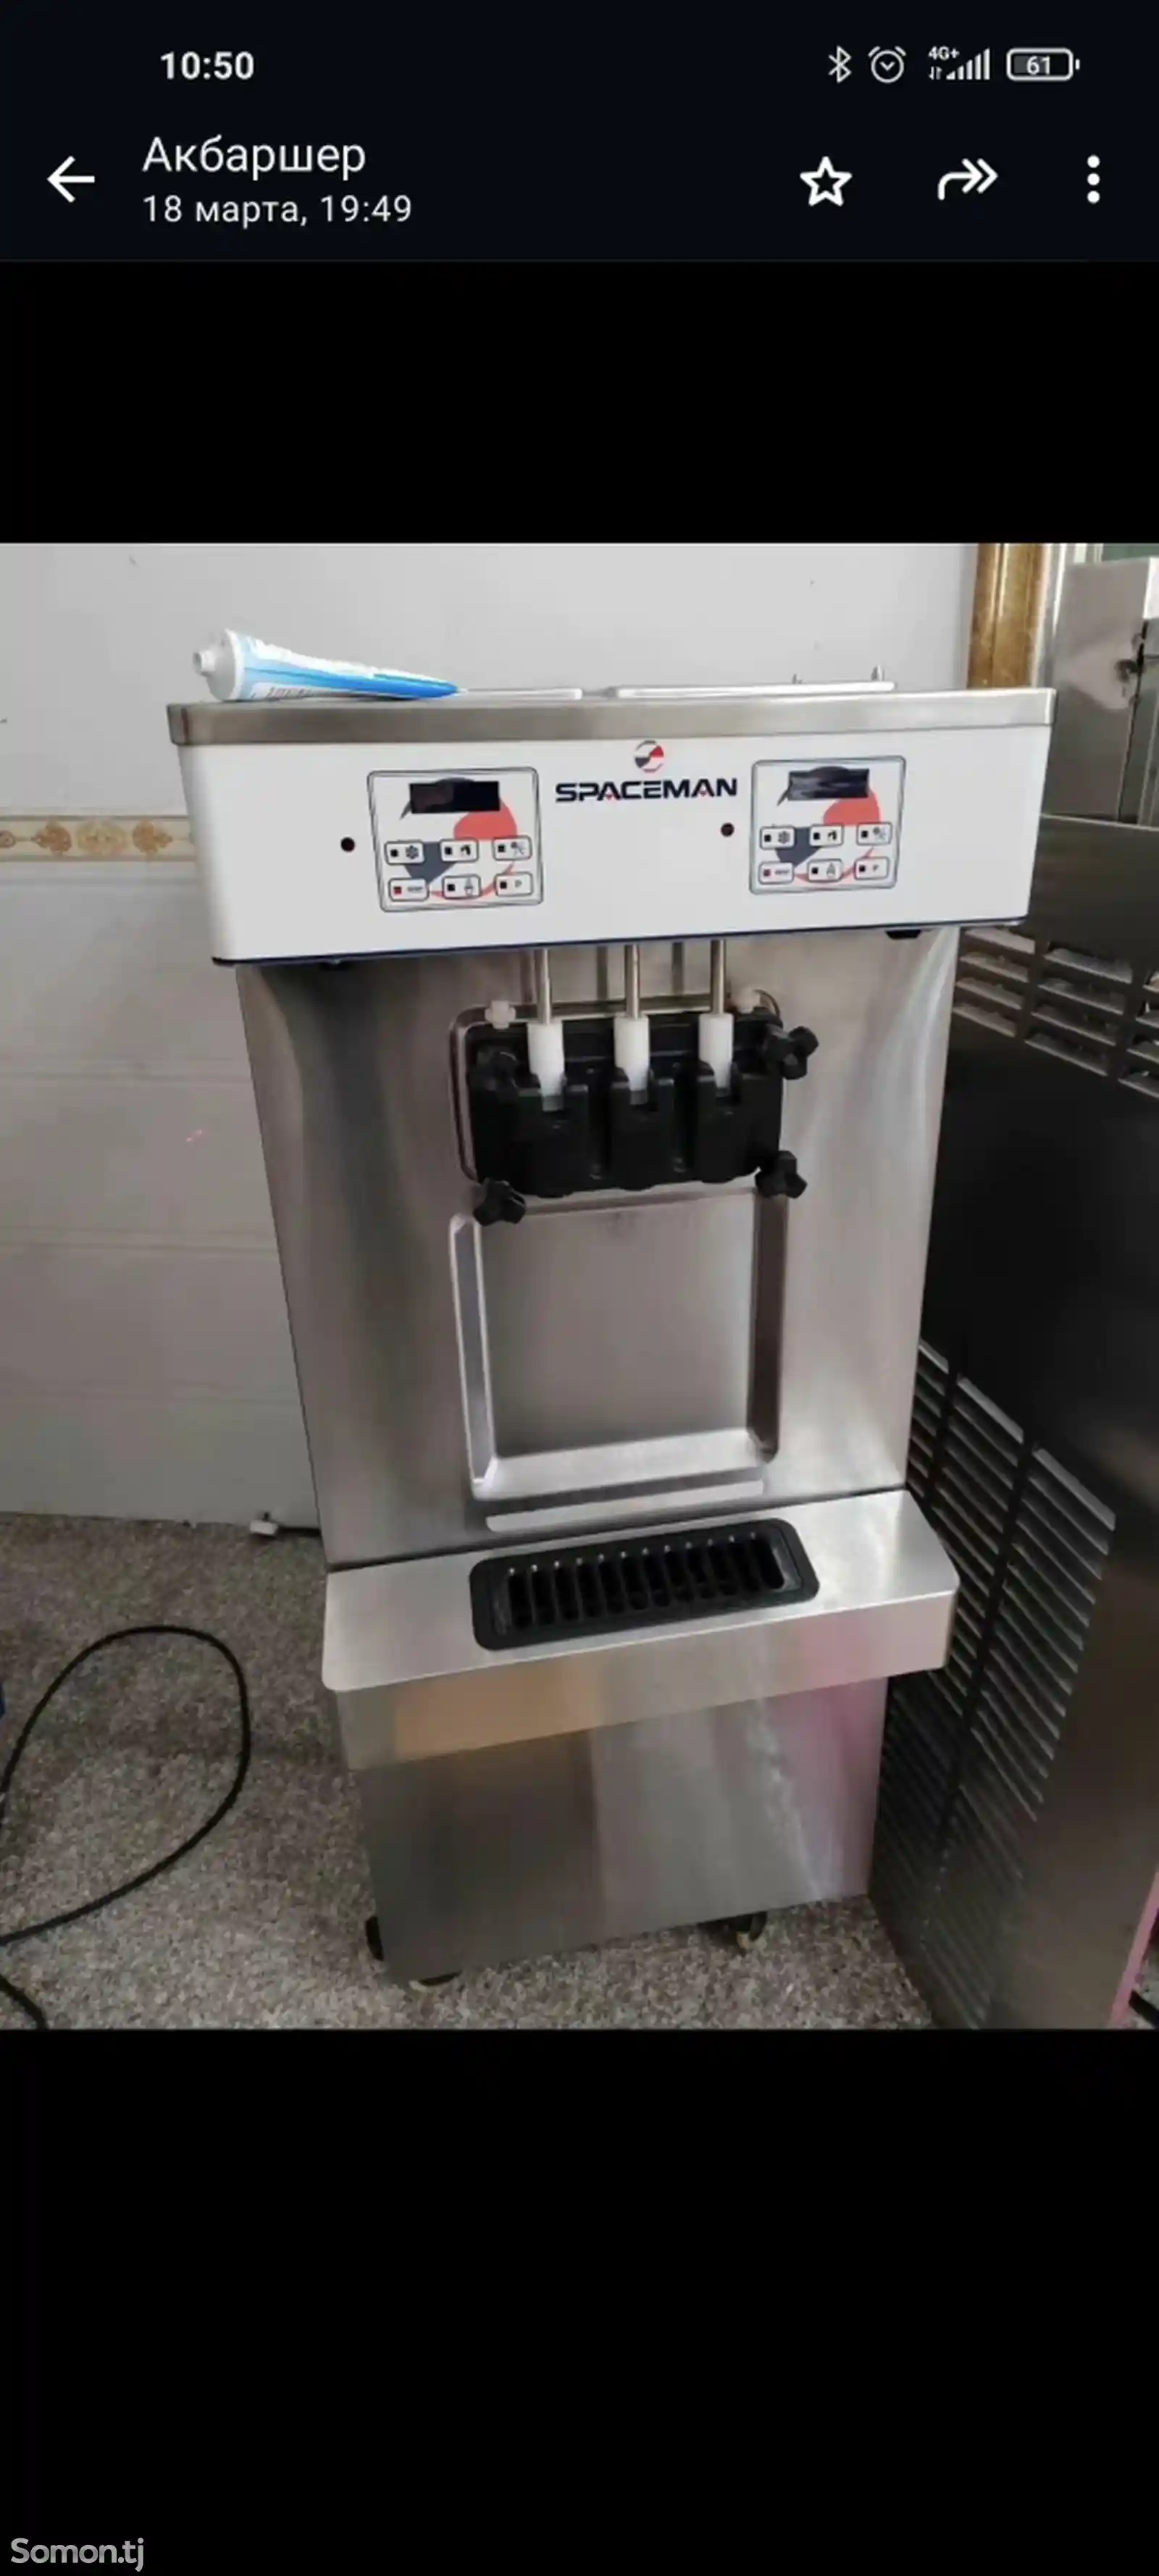 Аппарат для мороженого Spaceman-1